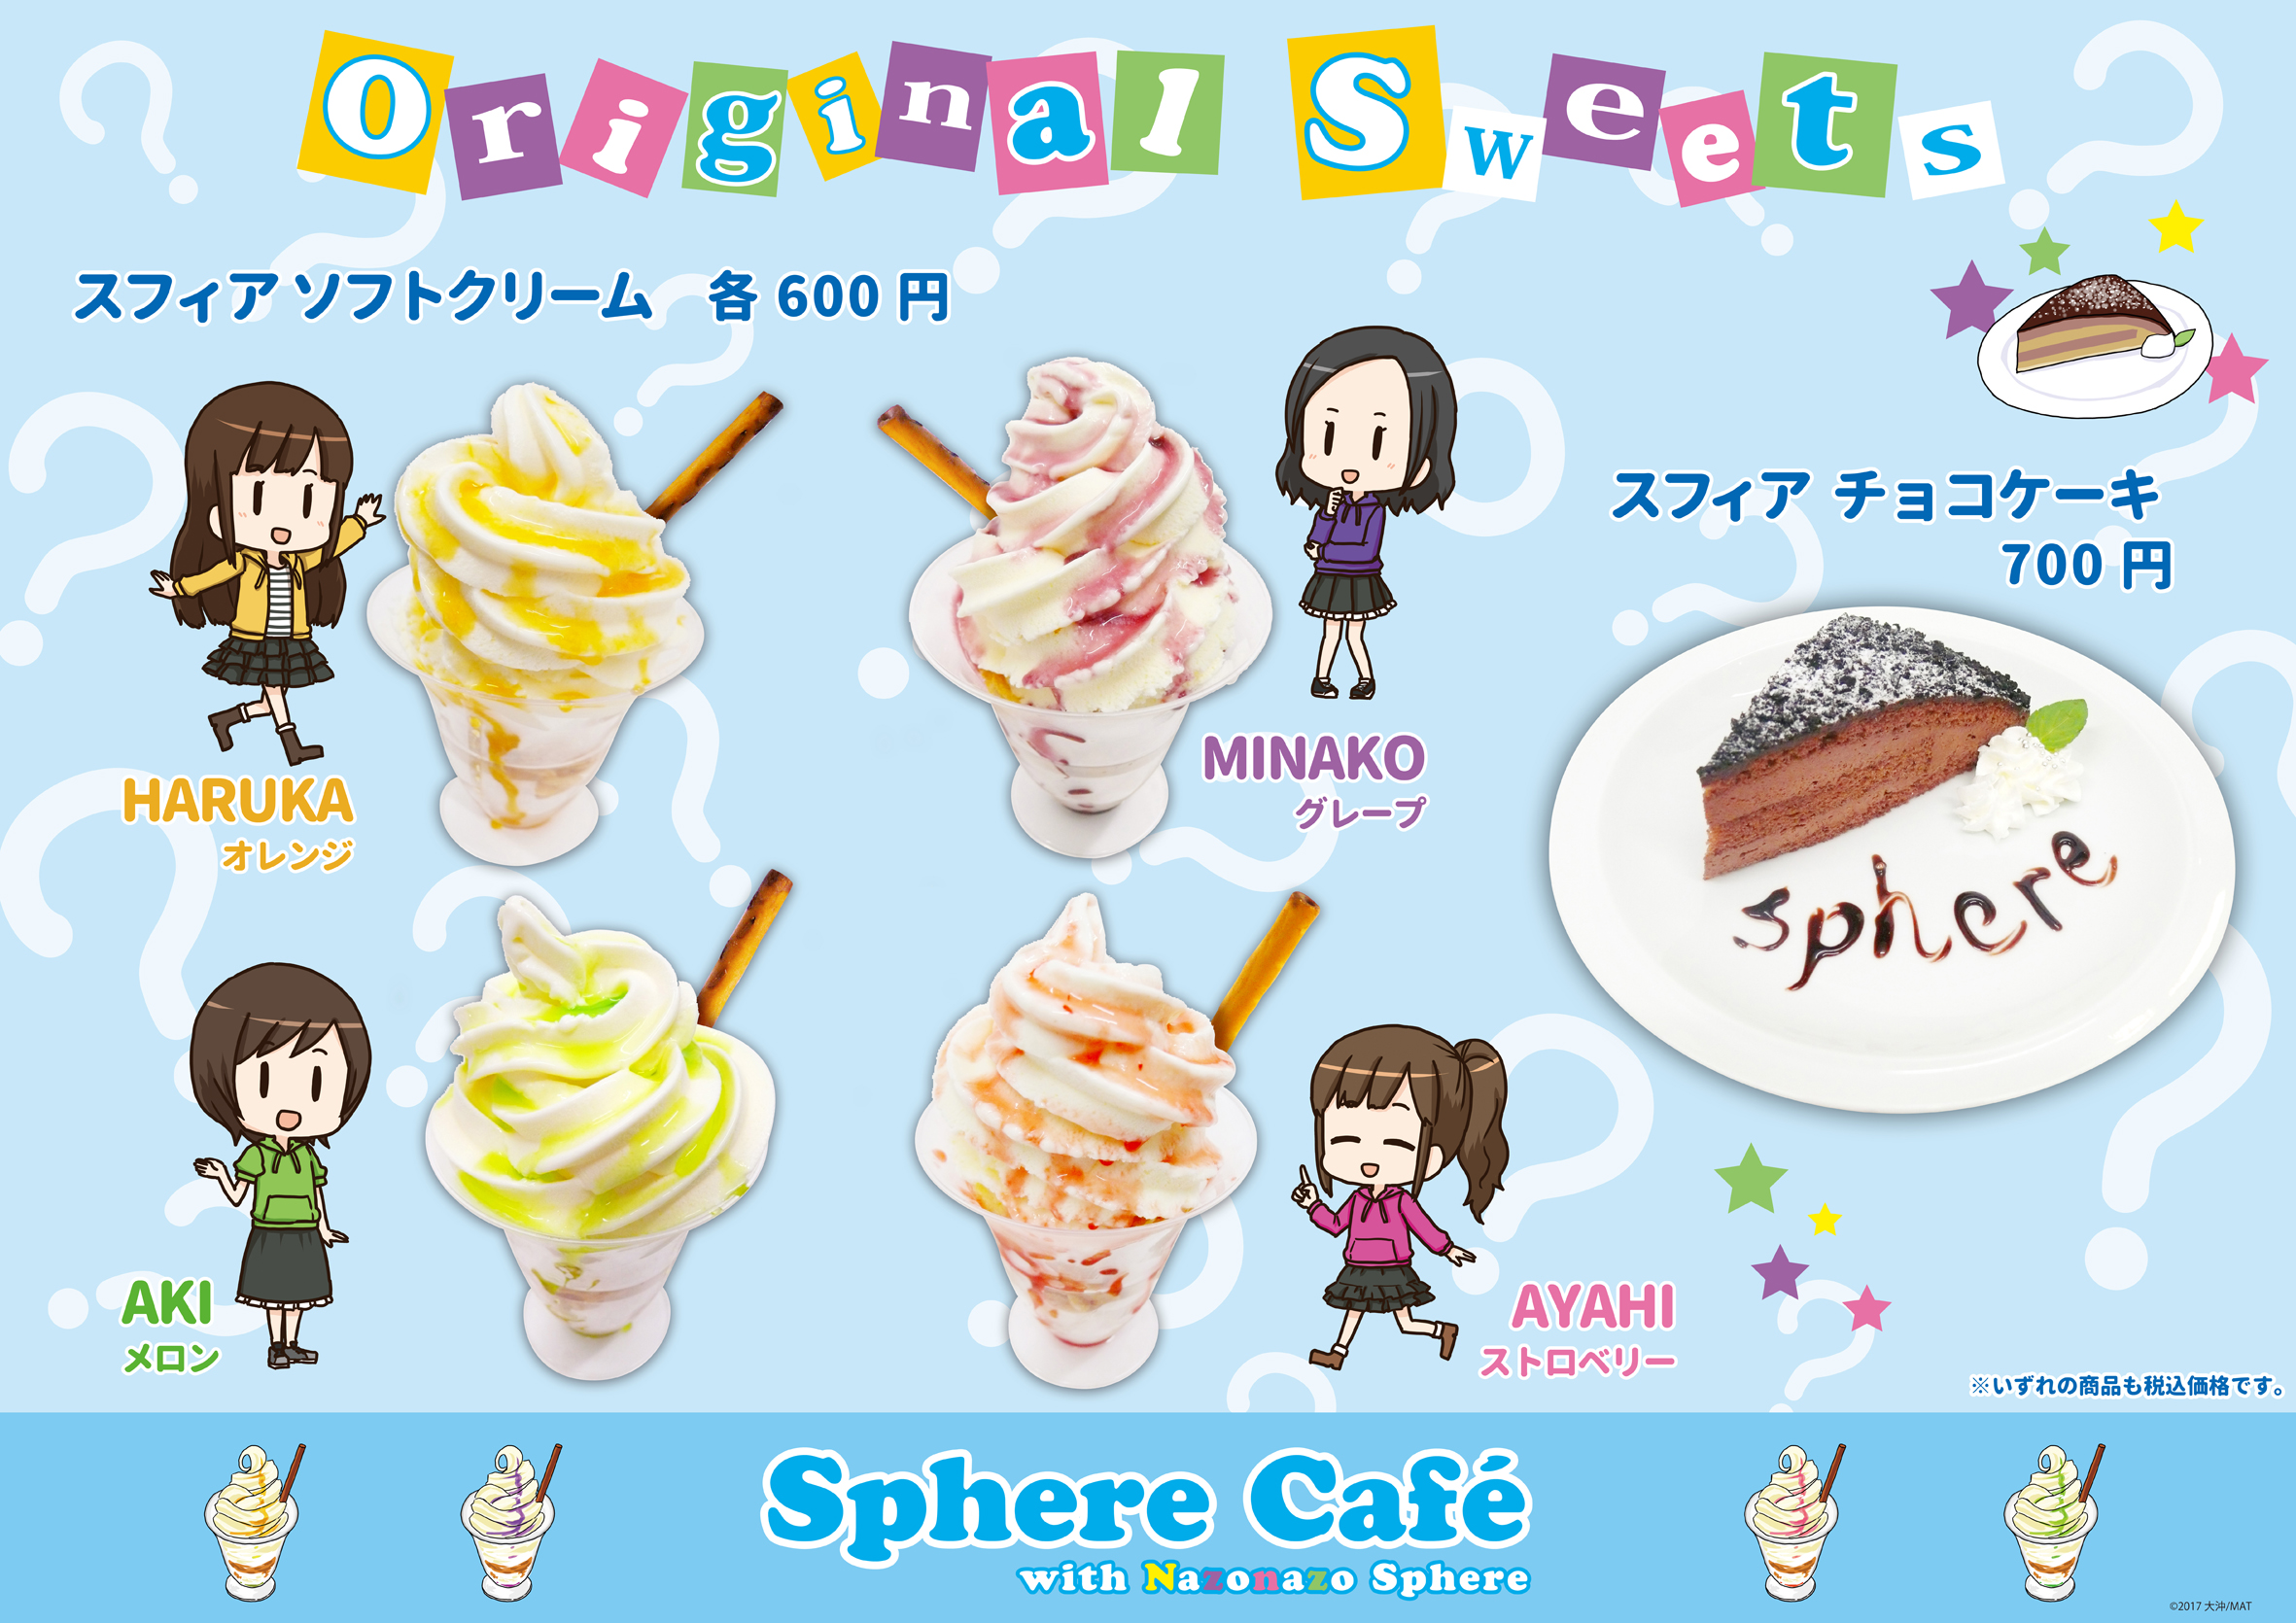 Sphere Cafe with ȂȂXtBAJtFj[̂ē